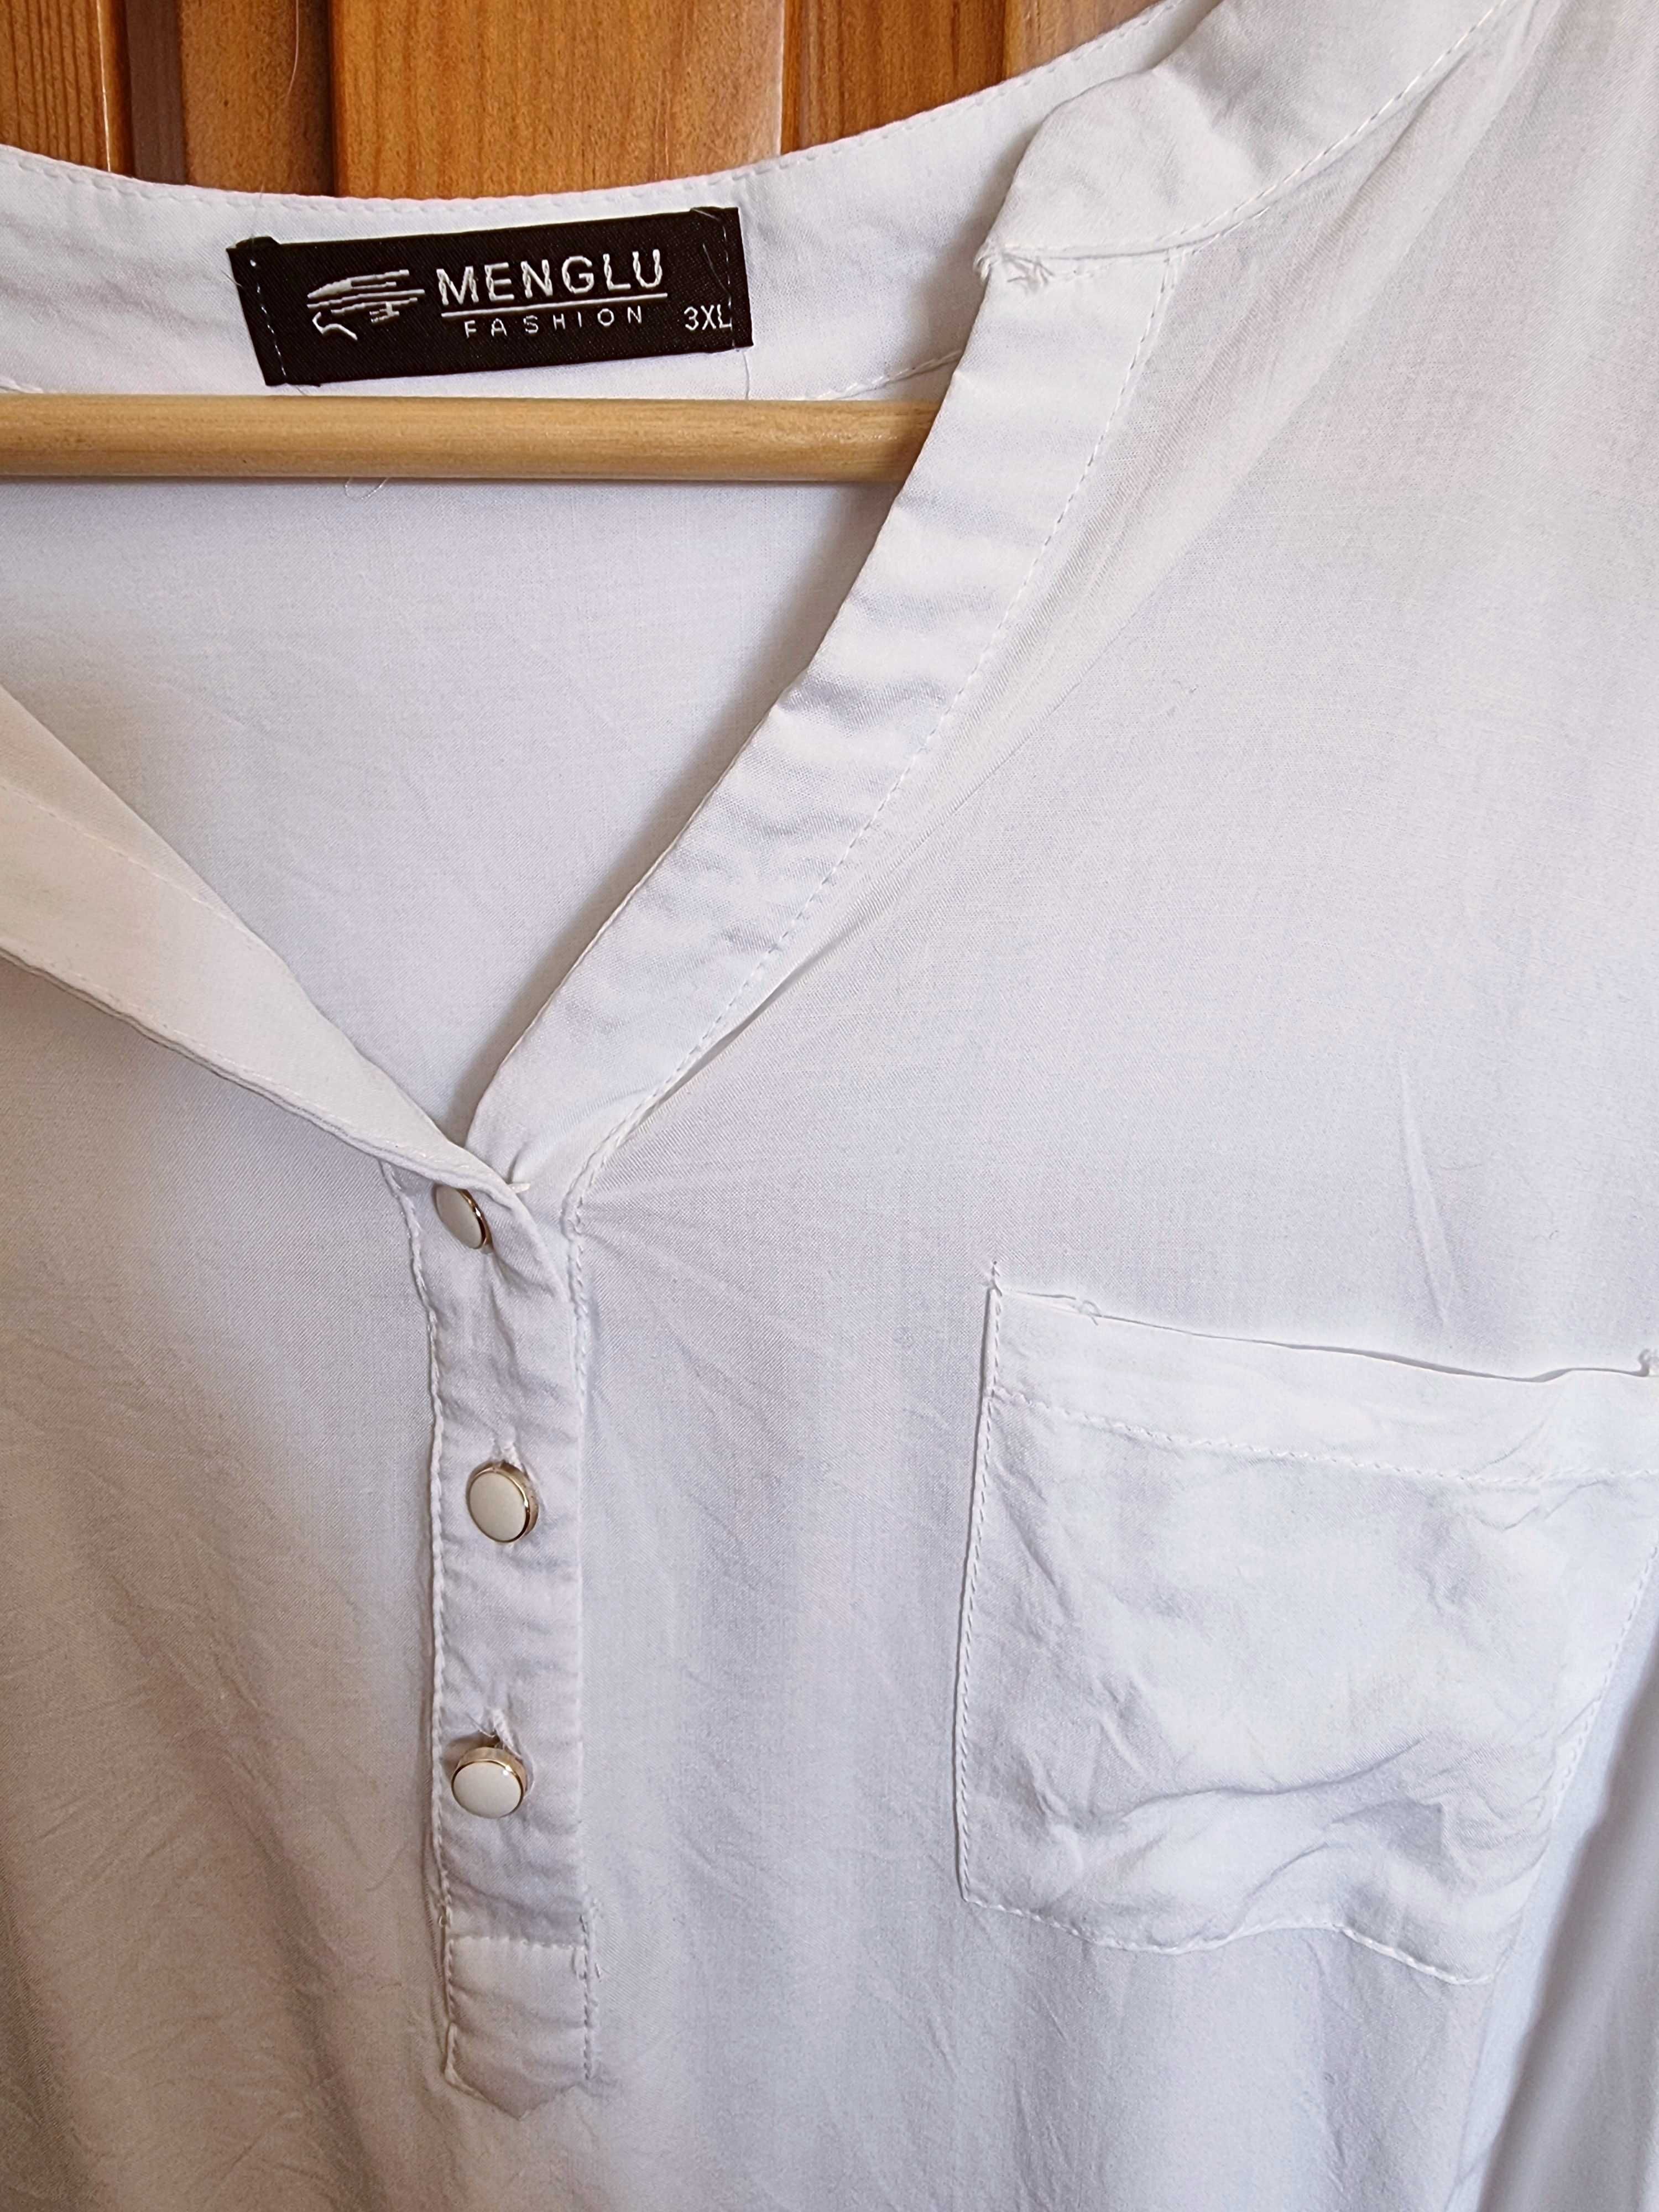 Blusa branca fresca Menglu, tamanho 3XL